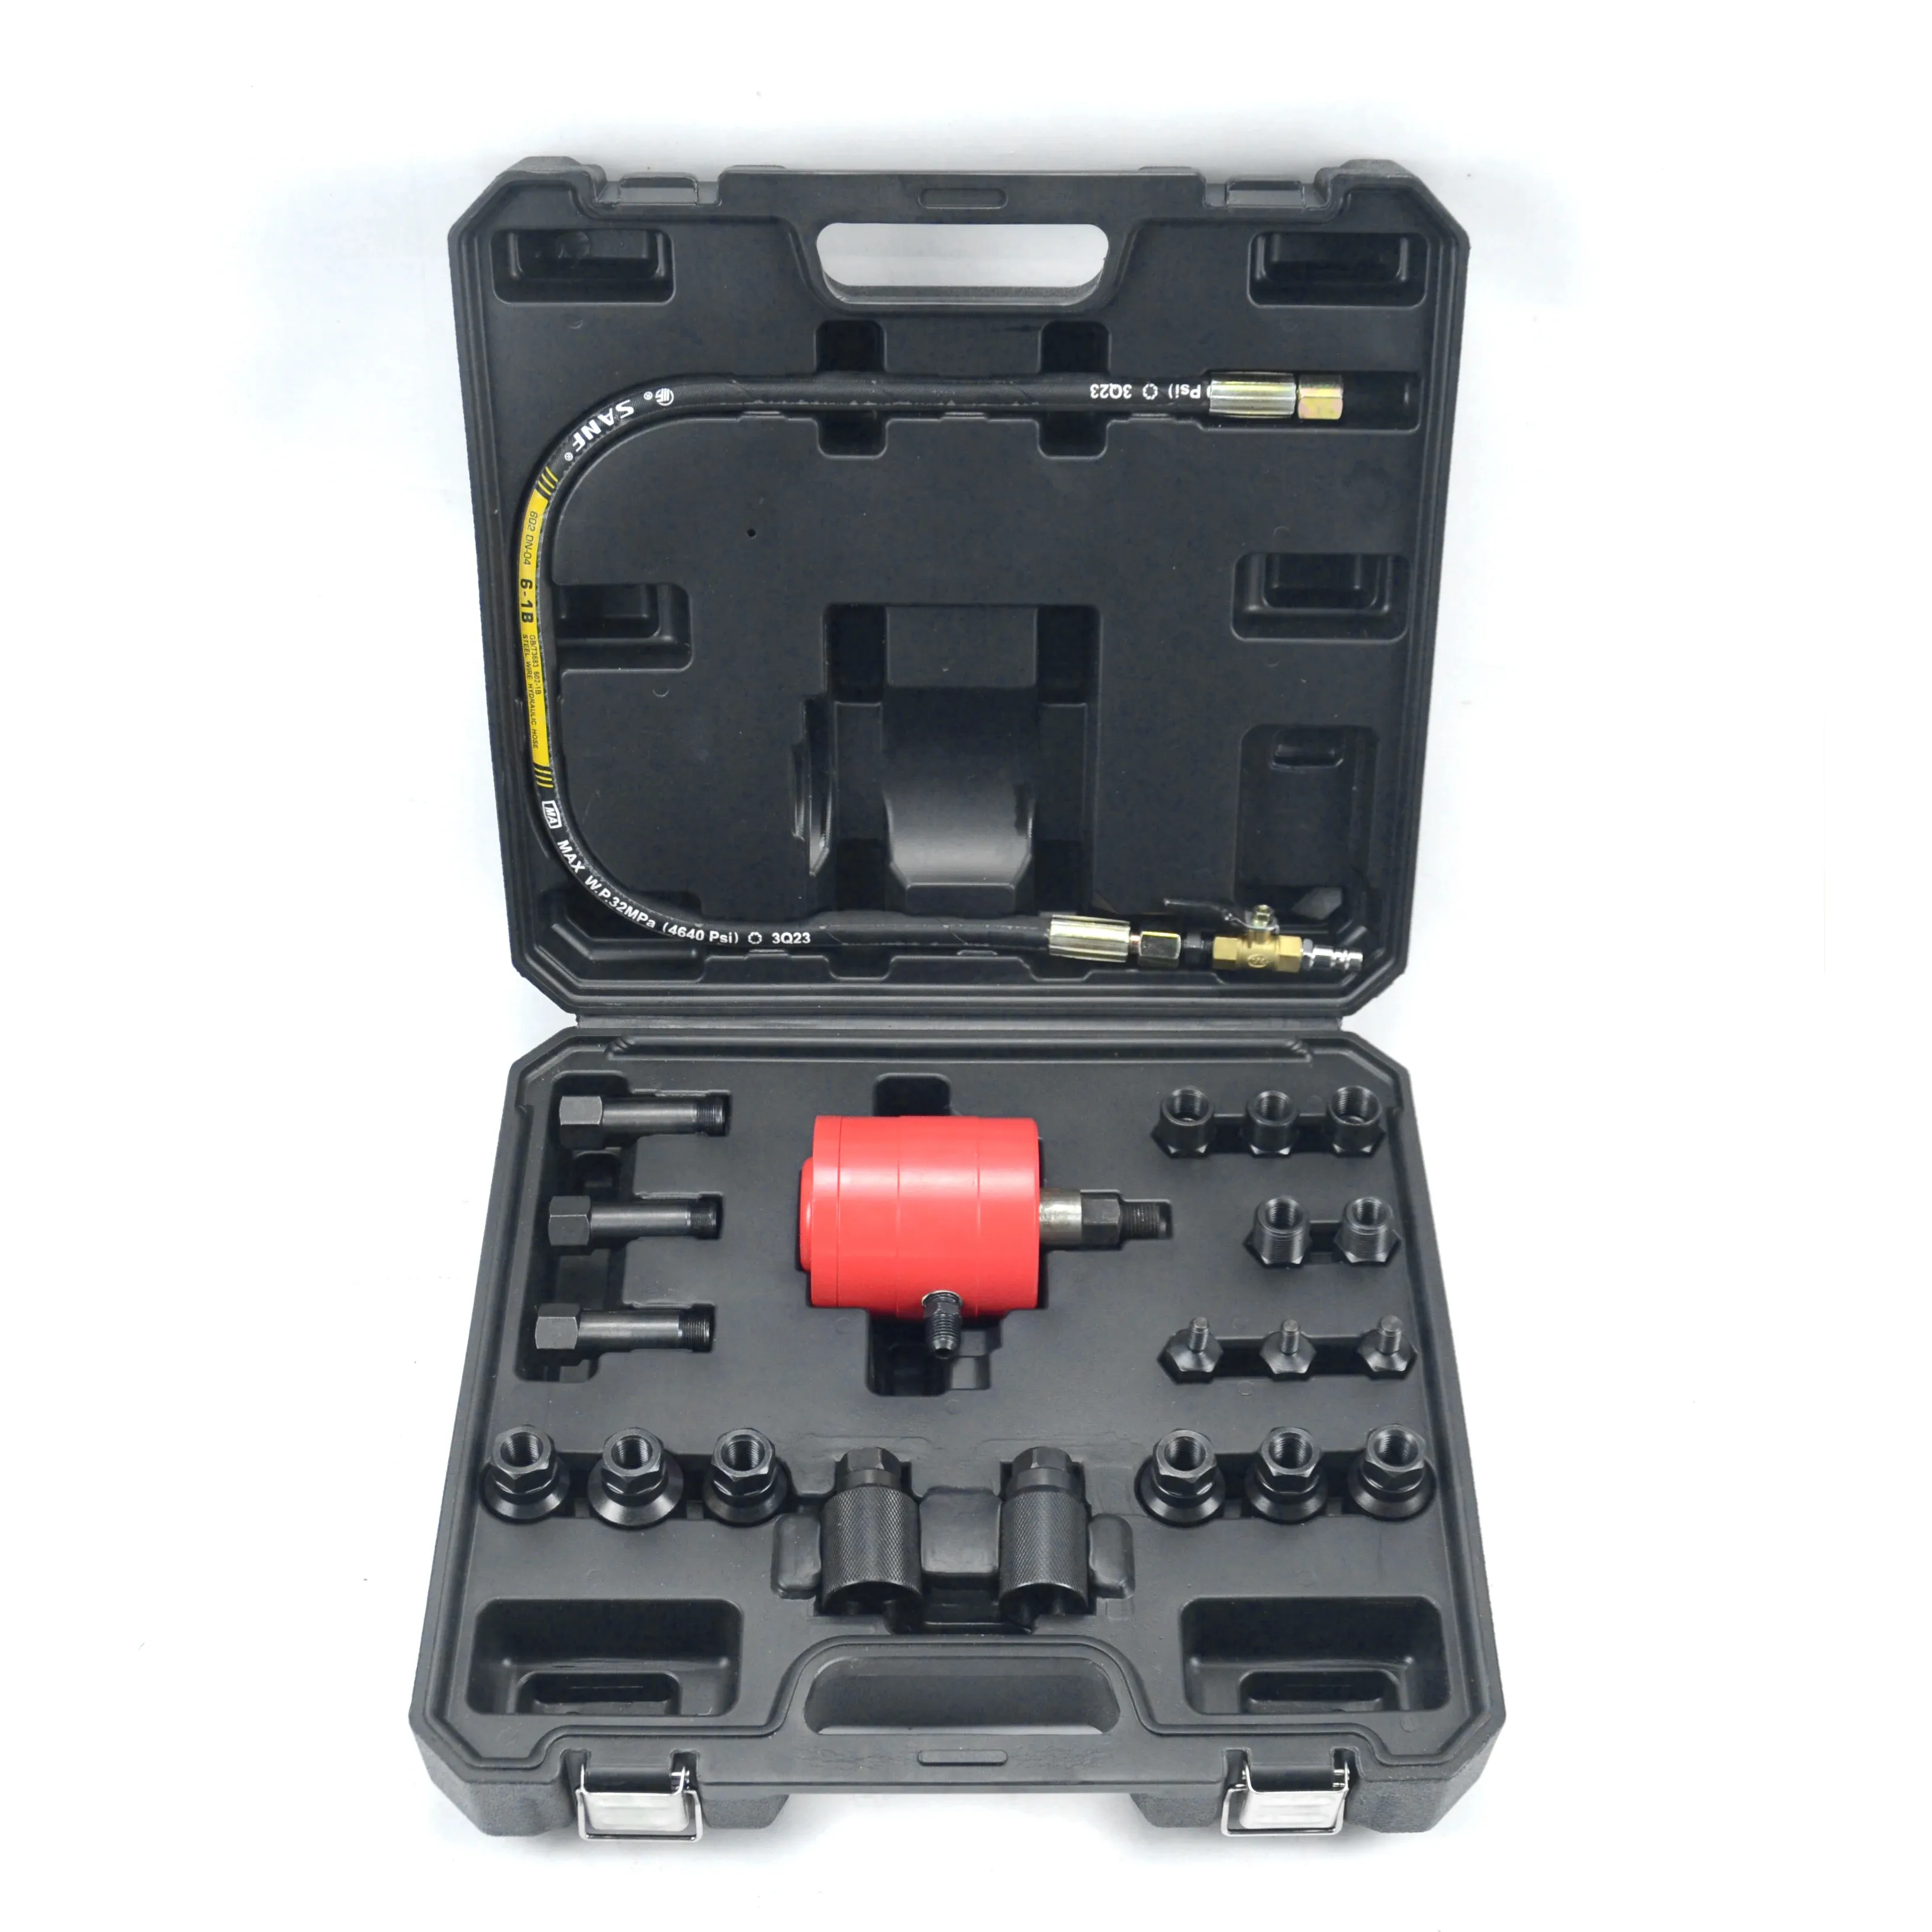 Xctool Xc8782a Pneumatische Injector Puller Set Automotaive Tool Voor Injectoren Auto Reparatie Set